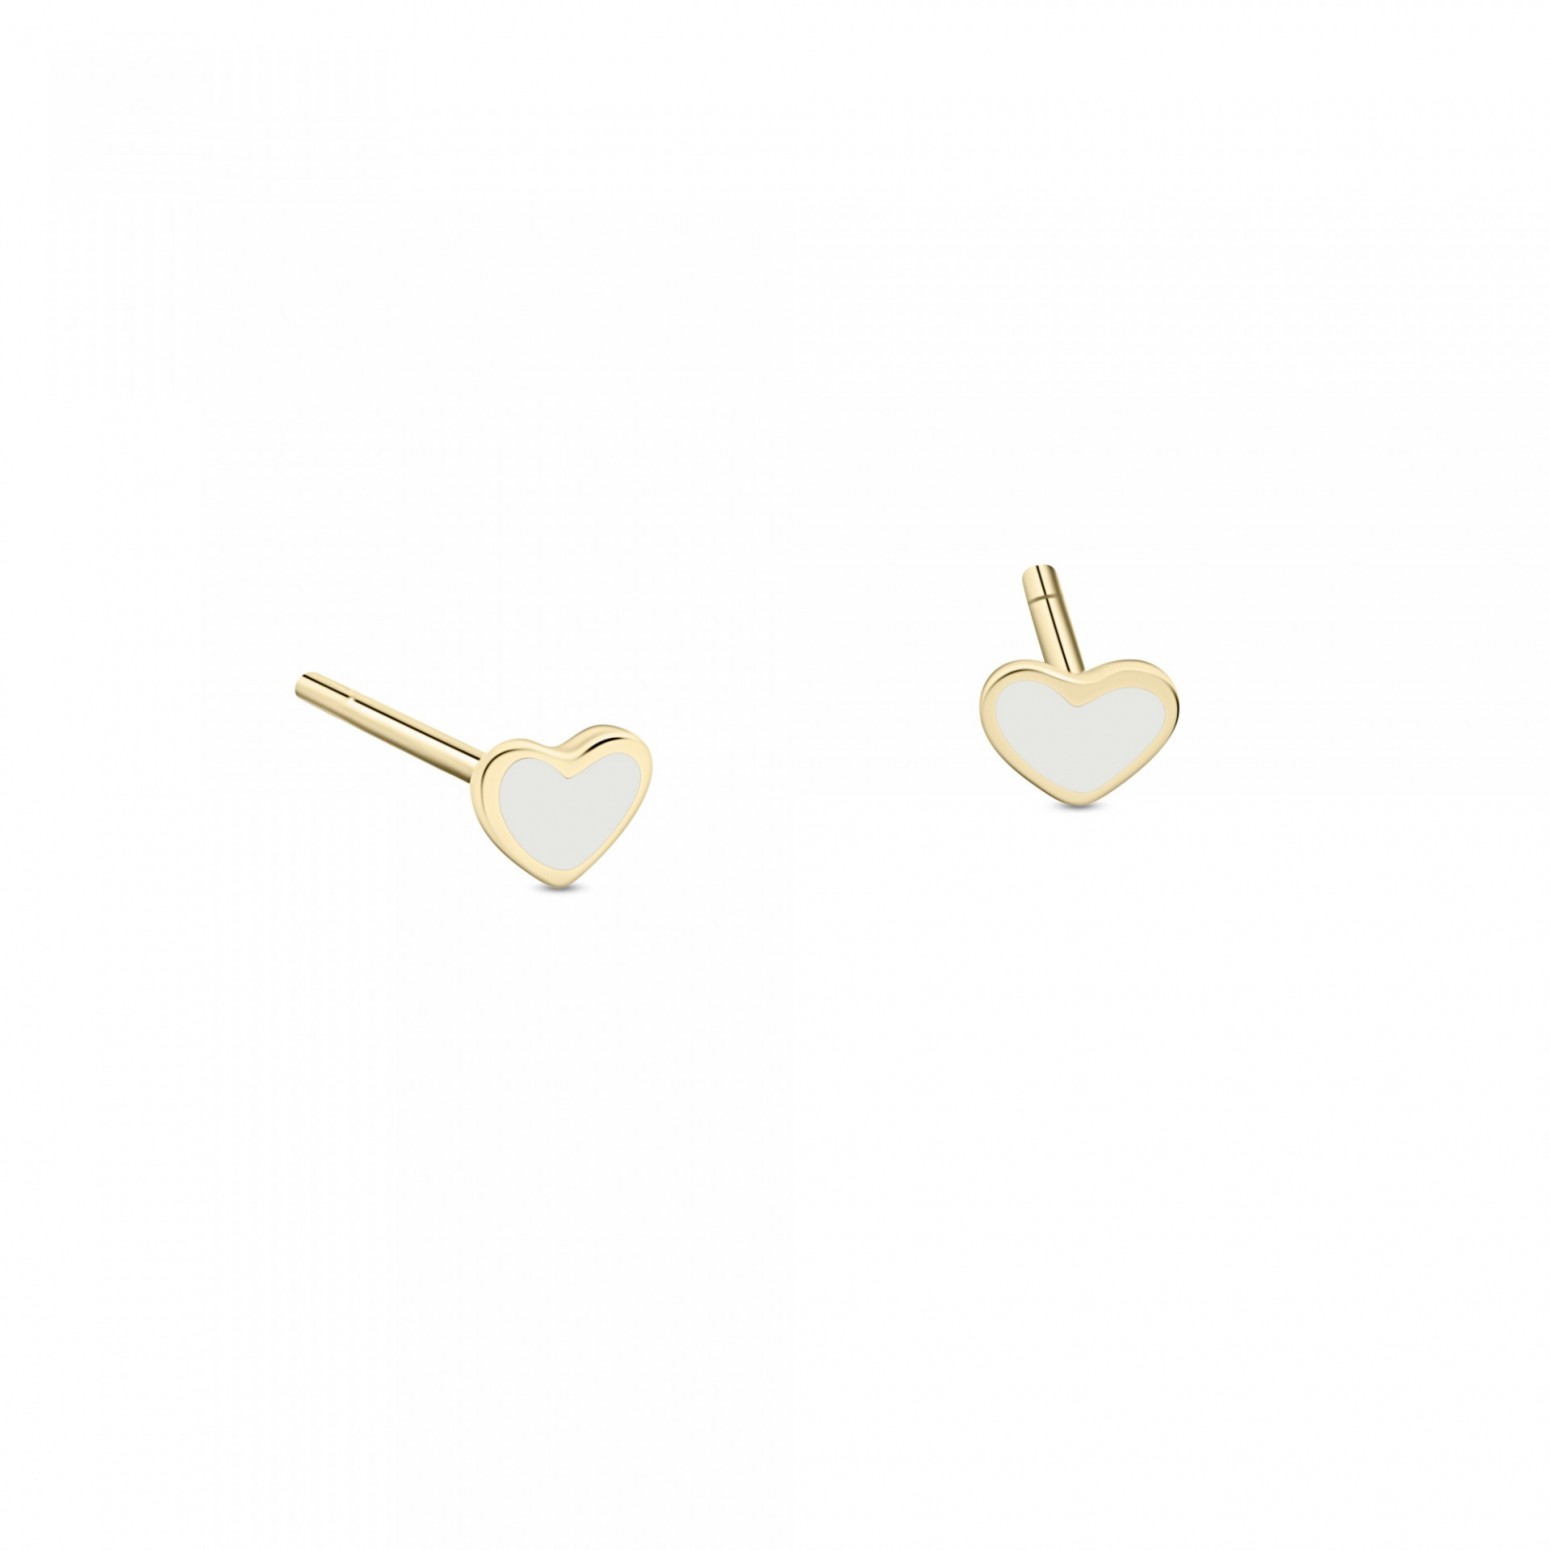 Heart baby earrings K9 gold with enamel, ps0152 EARRINGS Κοσμηματα - chrilia.gr